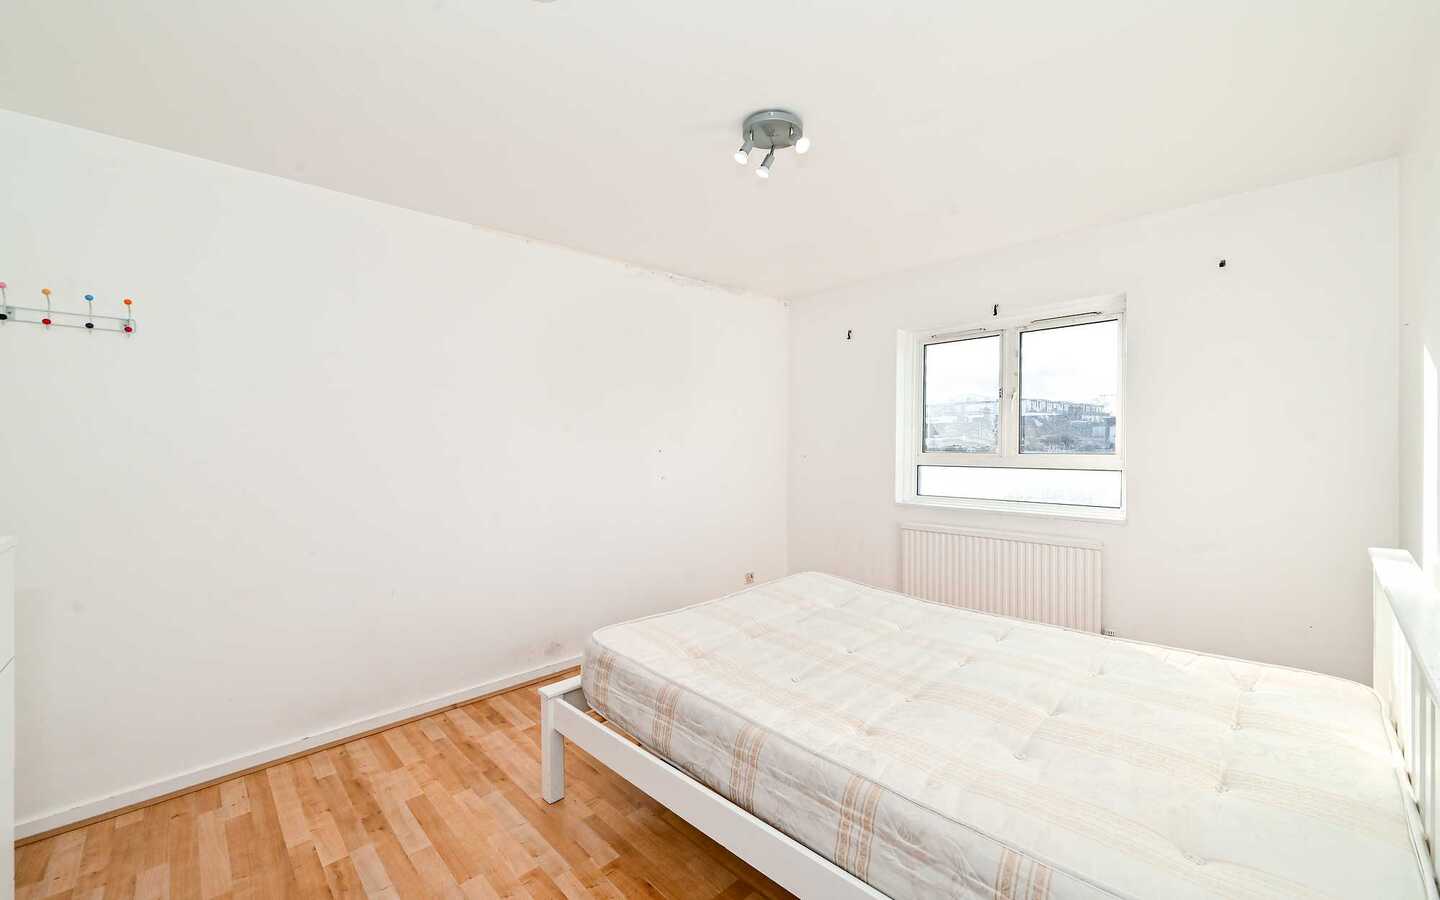 2 Bedroom Flat For Rent - Camden - London